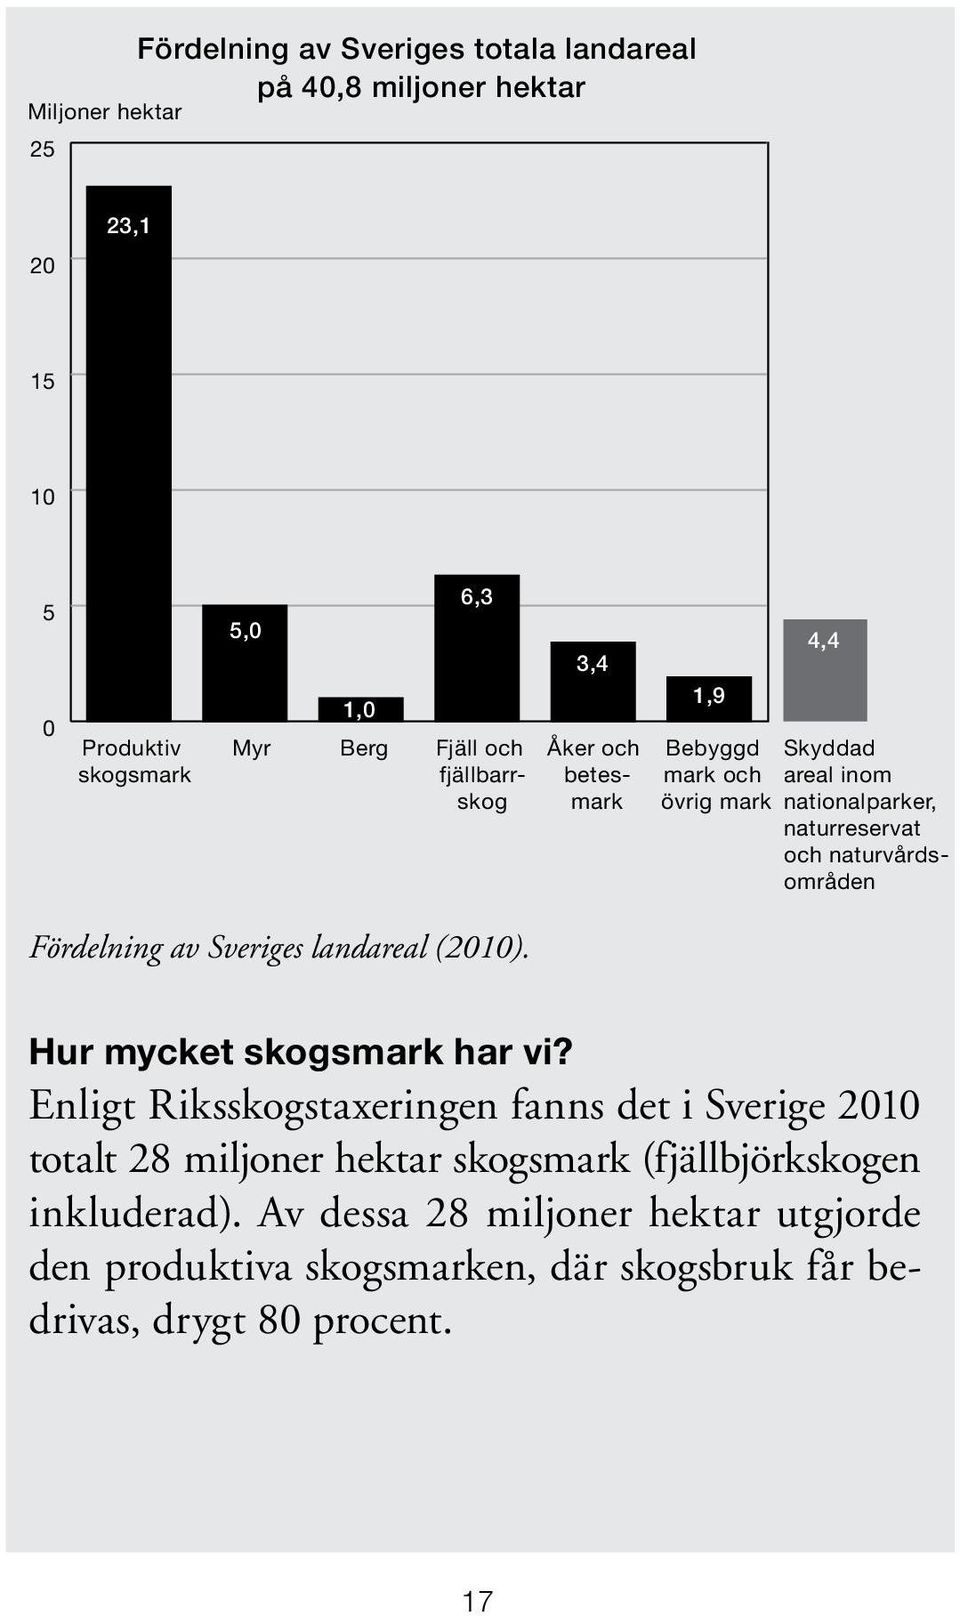 Fördelning av Sveriges landareal (2010). Hur mycket skogsmark har vi?